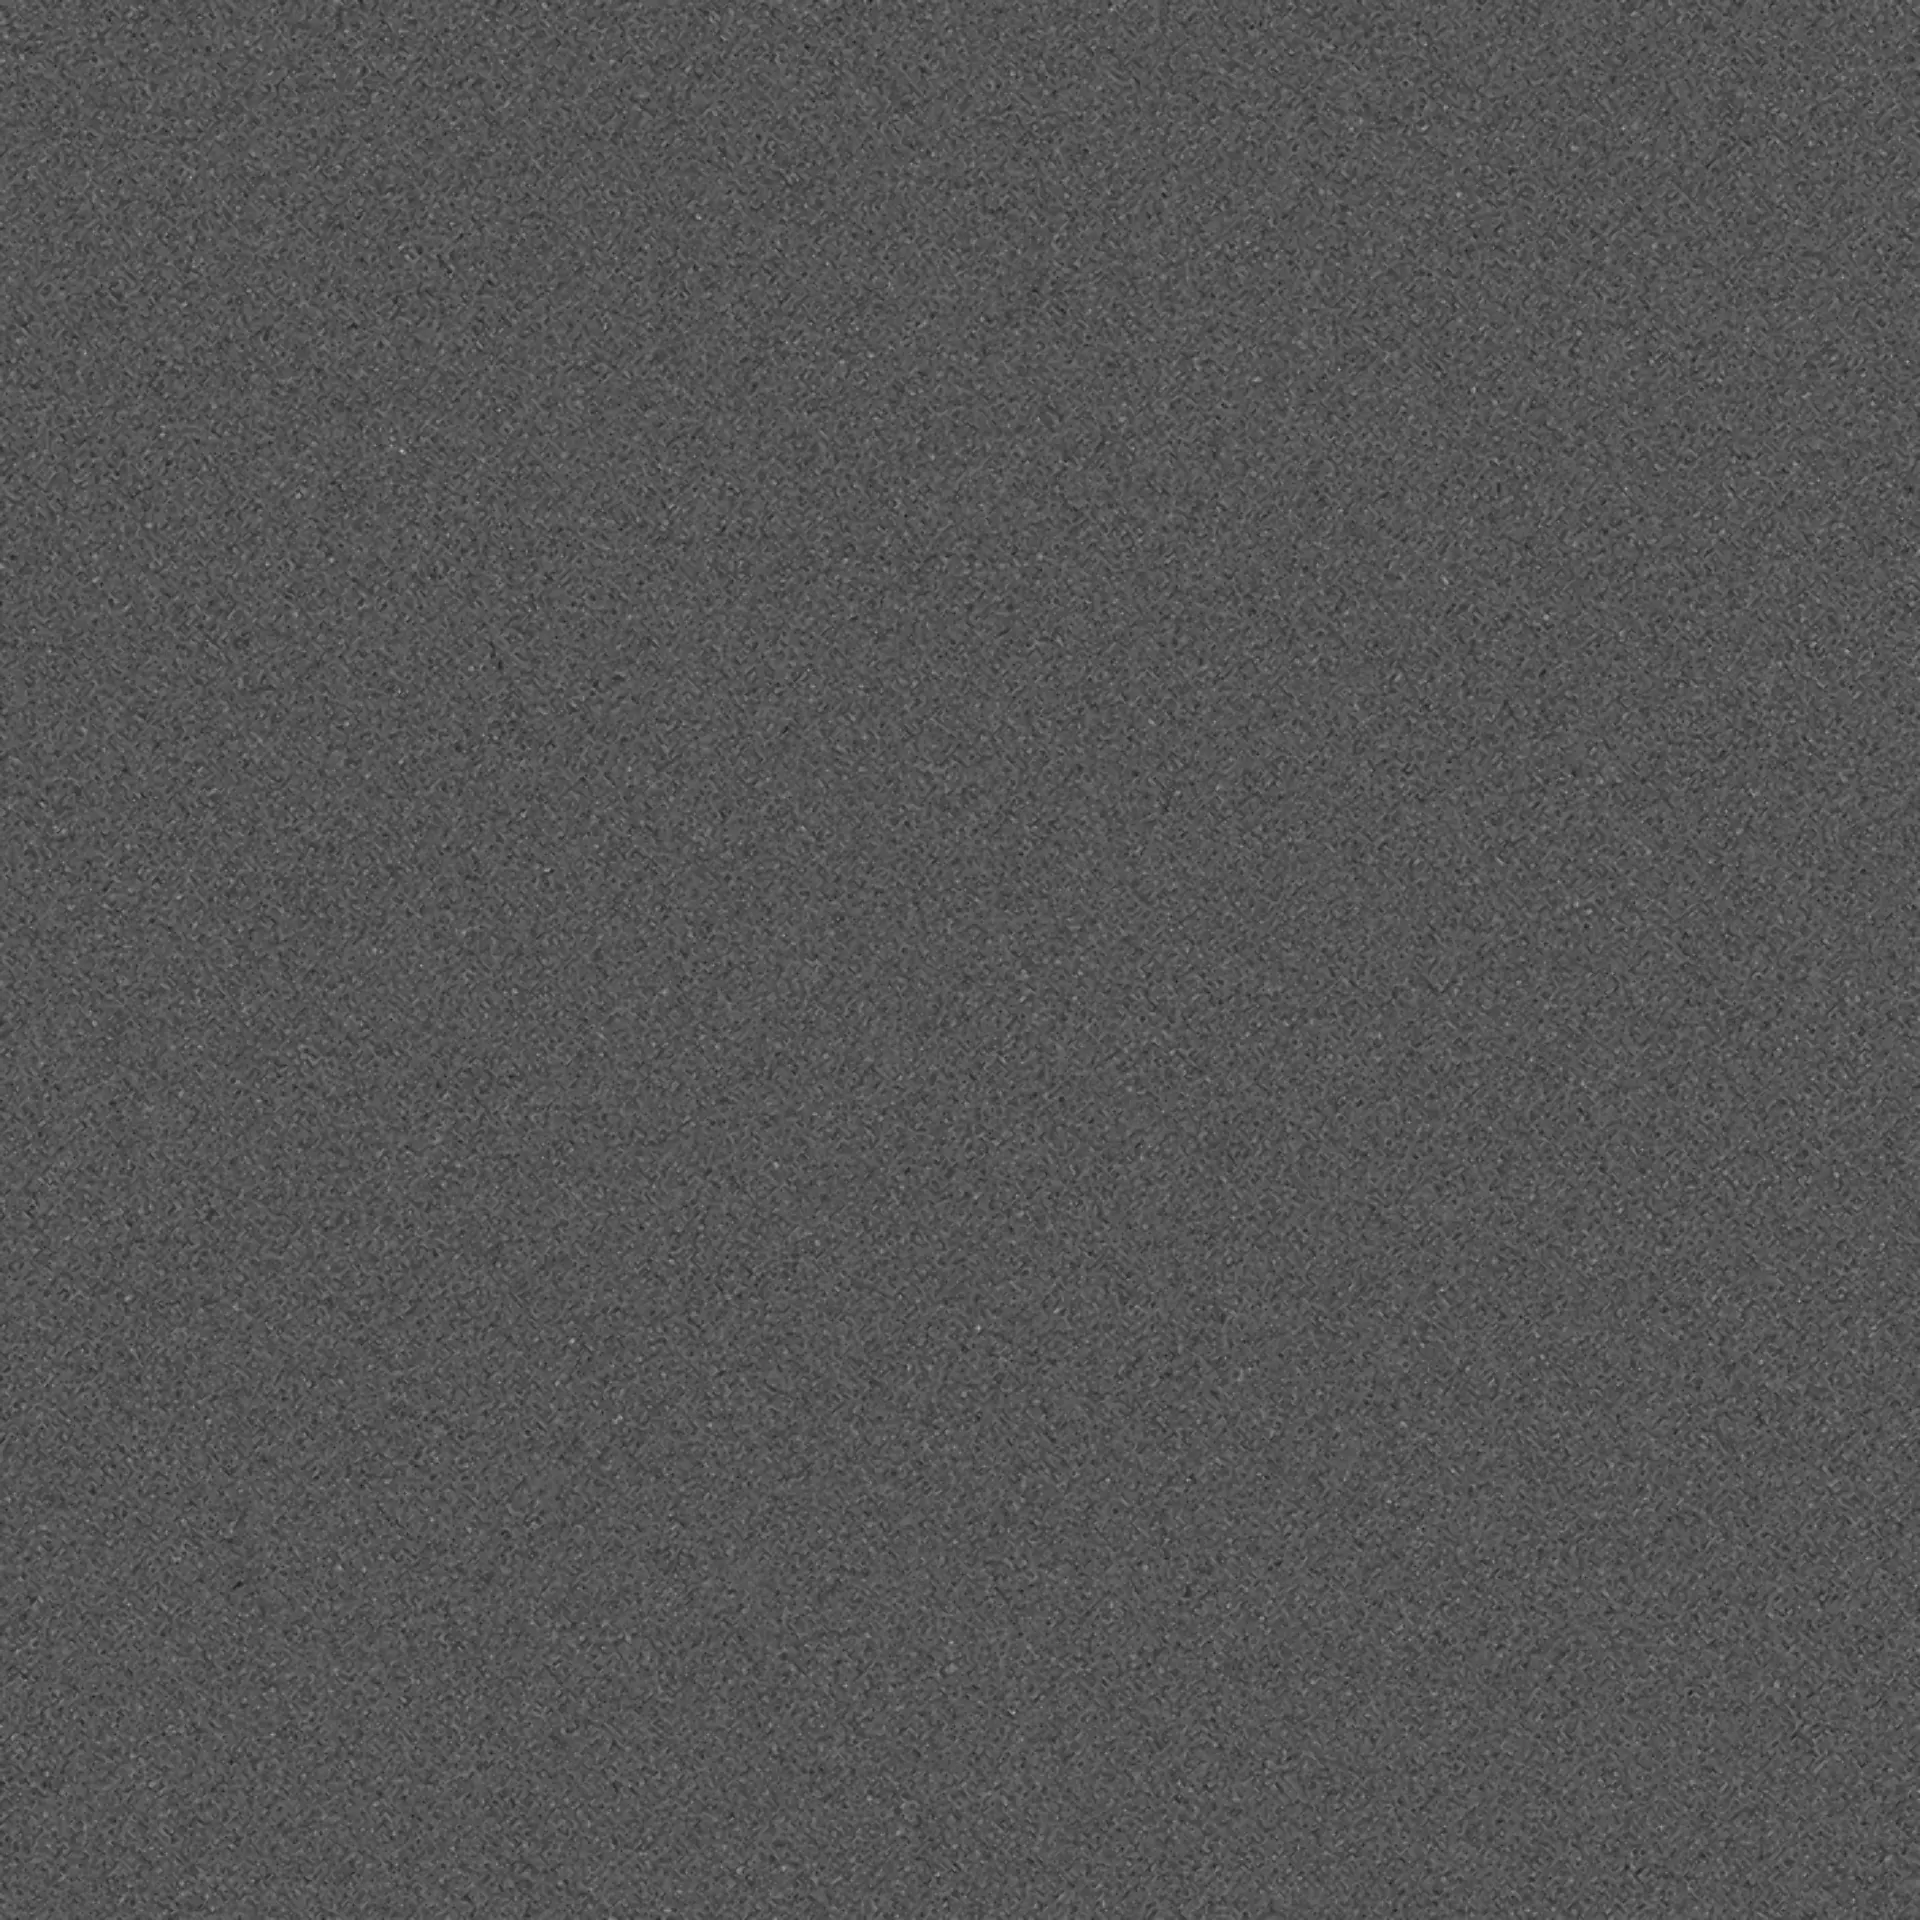 Wandfliese,Bodenfliese Villeroy & Boch Pure Line 2.0 Asphalt Grey Matt Asphalt Grey 2753-UL90 matt 60x60cm rektifiziert 12mm